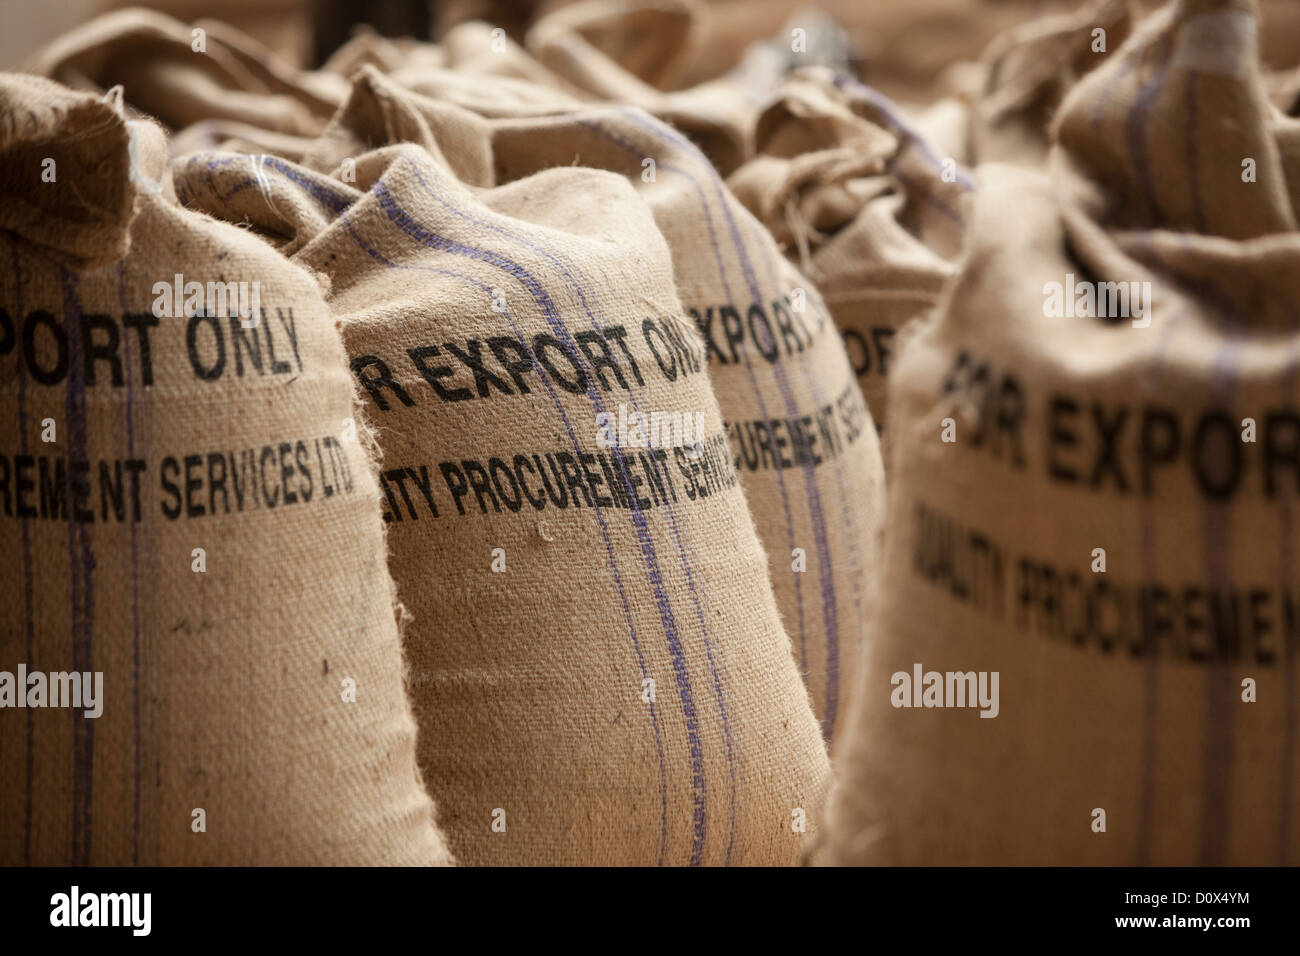 Sacos de granos de café están listos para exportar en un almacén en Kampala, Uganda, en el África oriental. Foto de stock